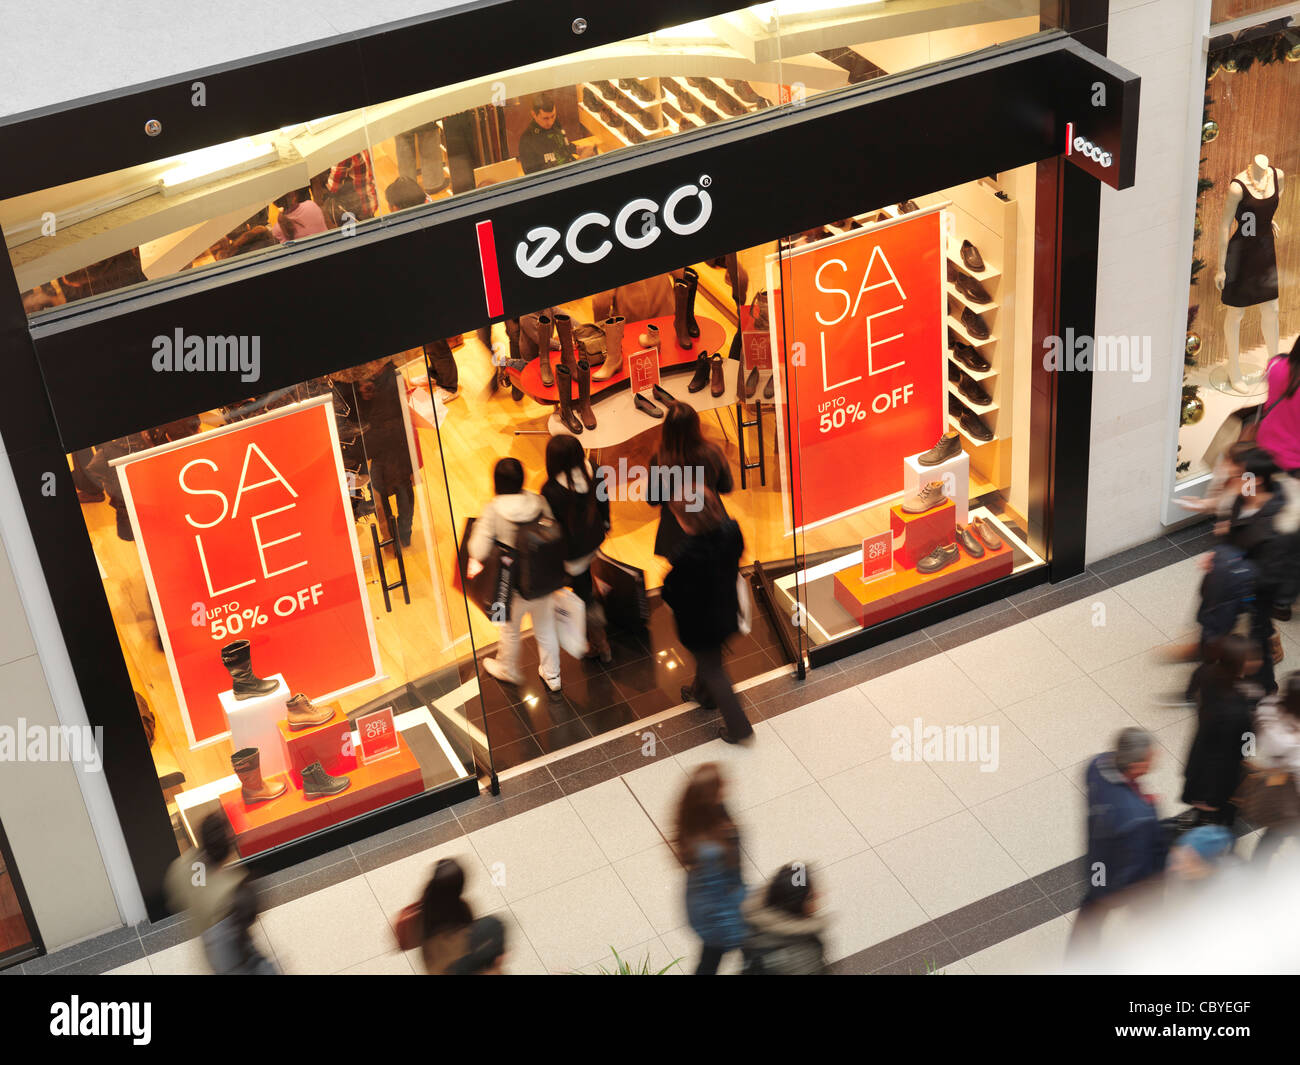 Boxing Day Verkauf unterschreibt bei Ecco-Ladenzeile in einem Einkaufszentrum. Toronto Eaton Centre, Ontario, Kanada. Stockfoto